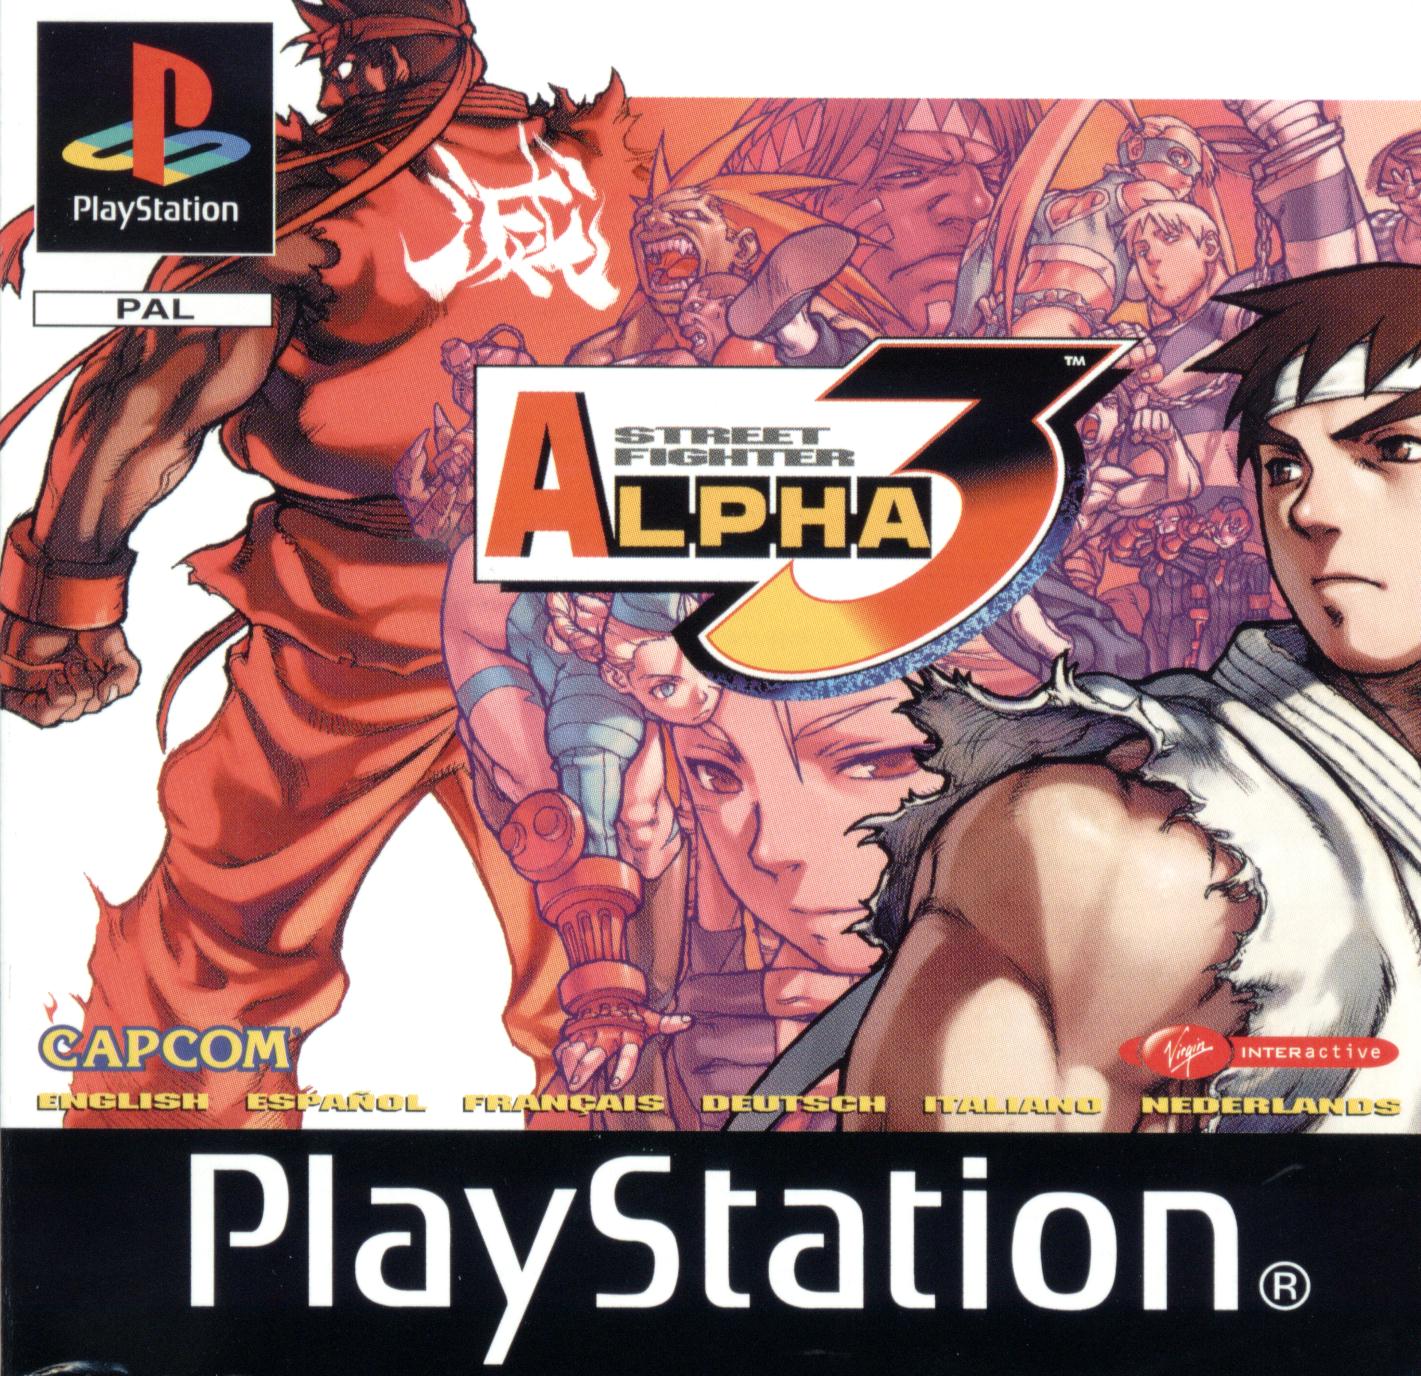 Falando um pouco sobre o Street Fighter Alpha 3